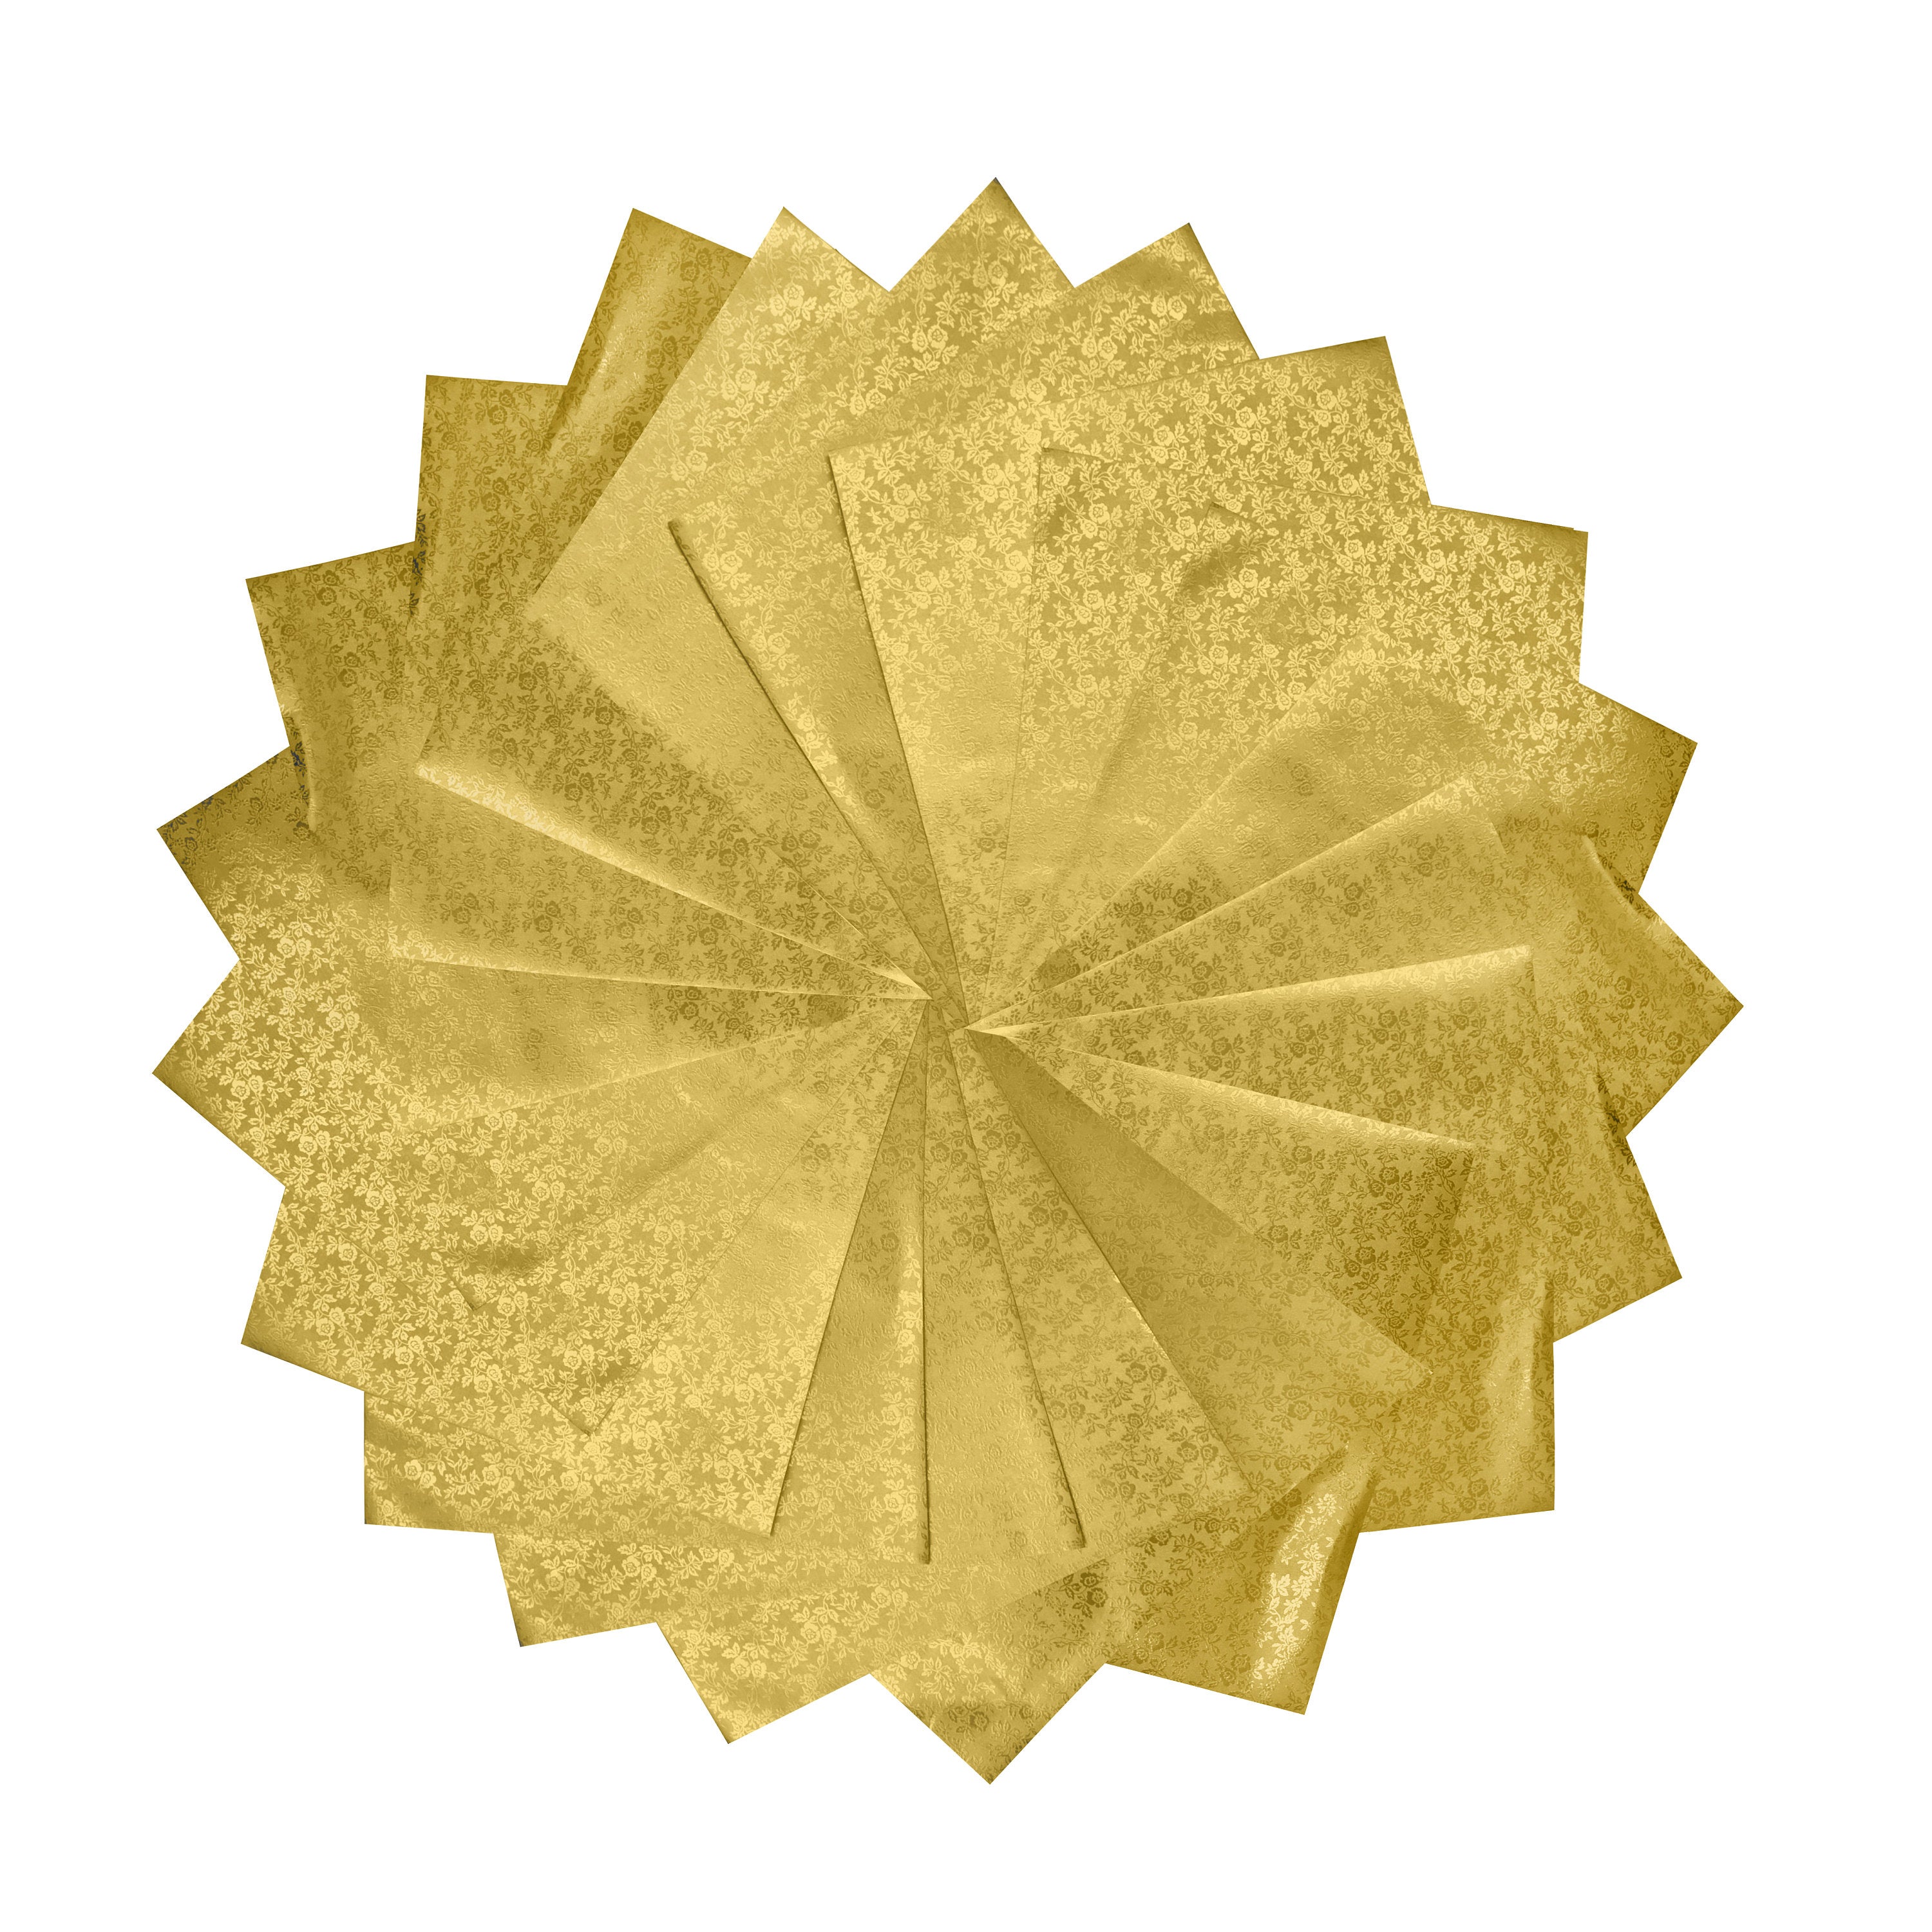 12 fogli 12x12 cartoncini per origami rivestiti in perle dorate, 125 g/m²: ideali per realizzare biglietti, scrapbooking, inviti e lavori con la carta